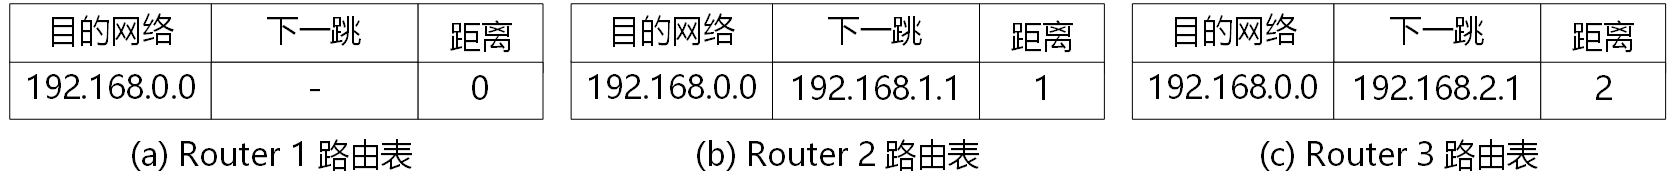 去往192.168.0.0网络的路由信息示意图